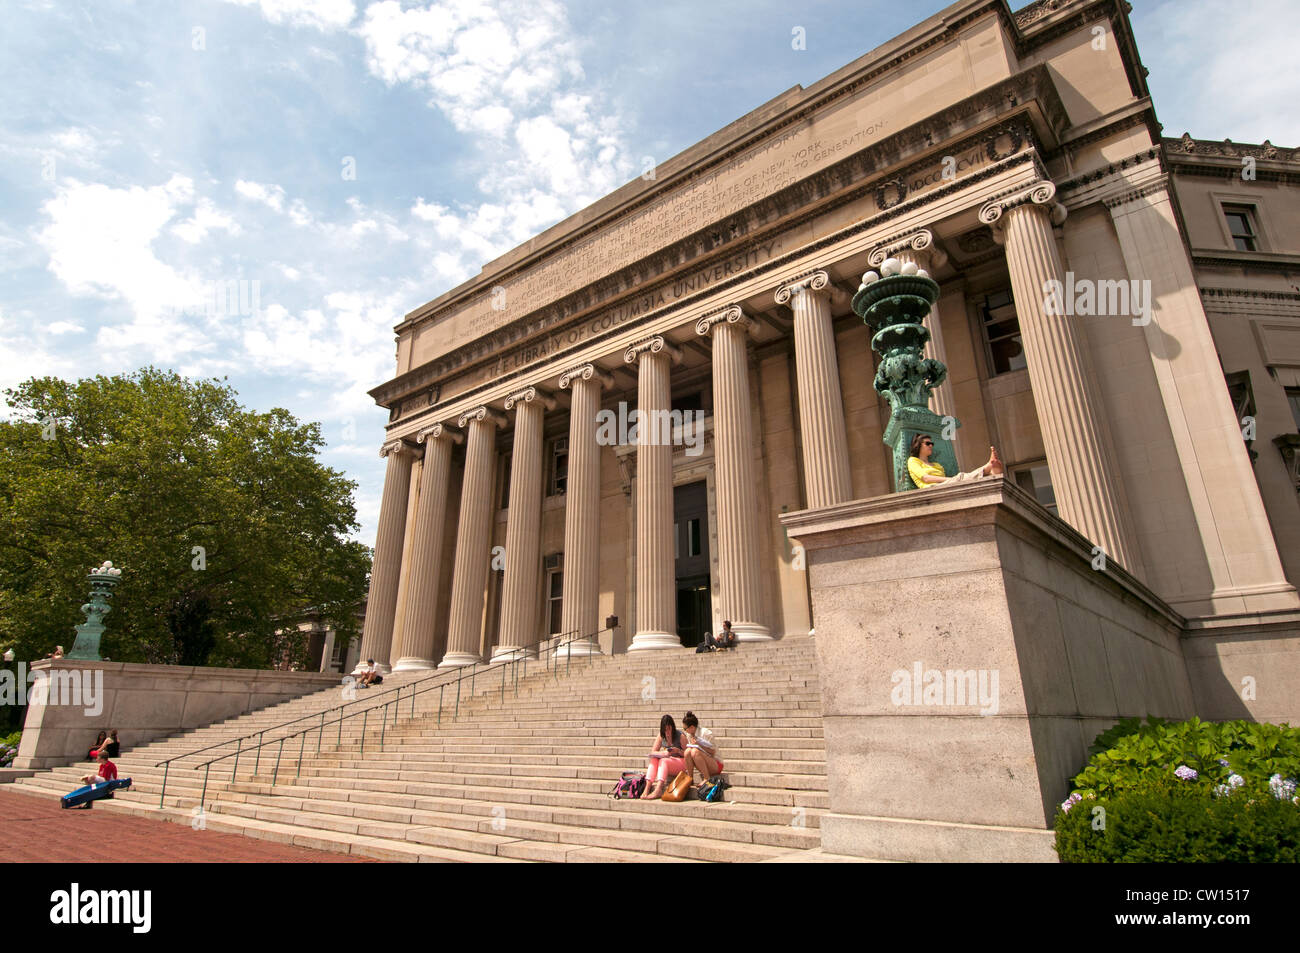 L'Université de Columbia ( dans la ville de New York ) Upper West Side Harlem United States of America Banque D'Images